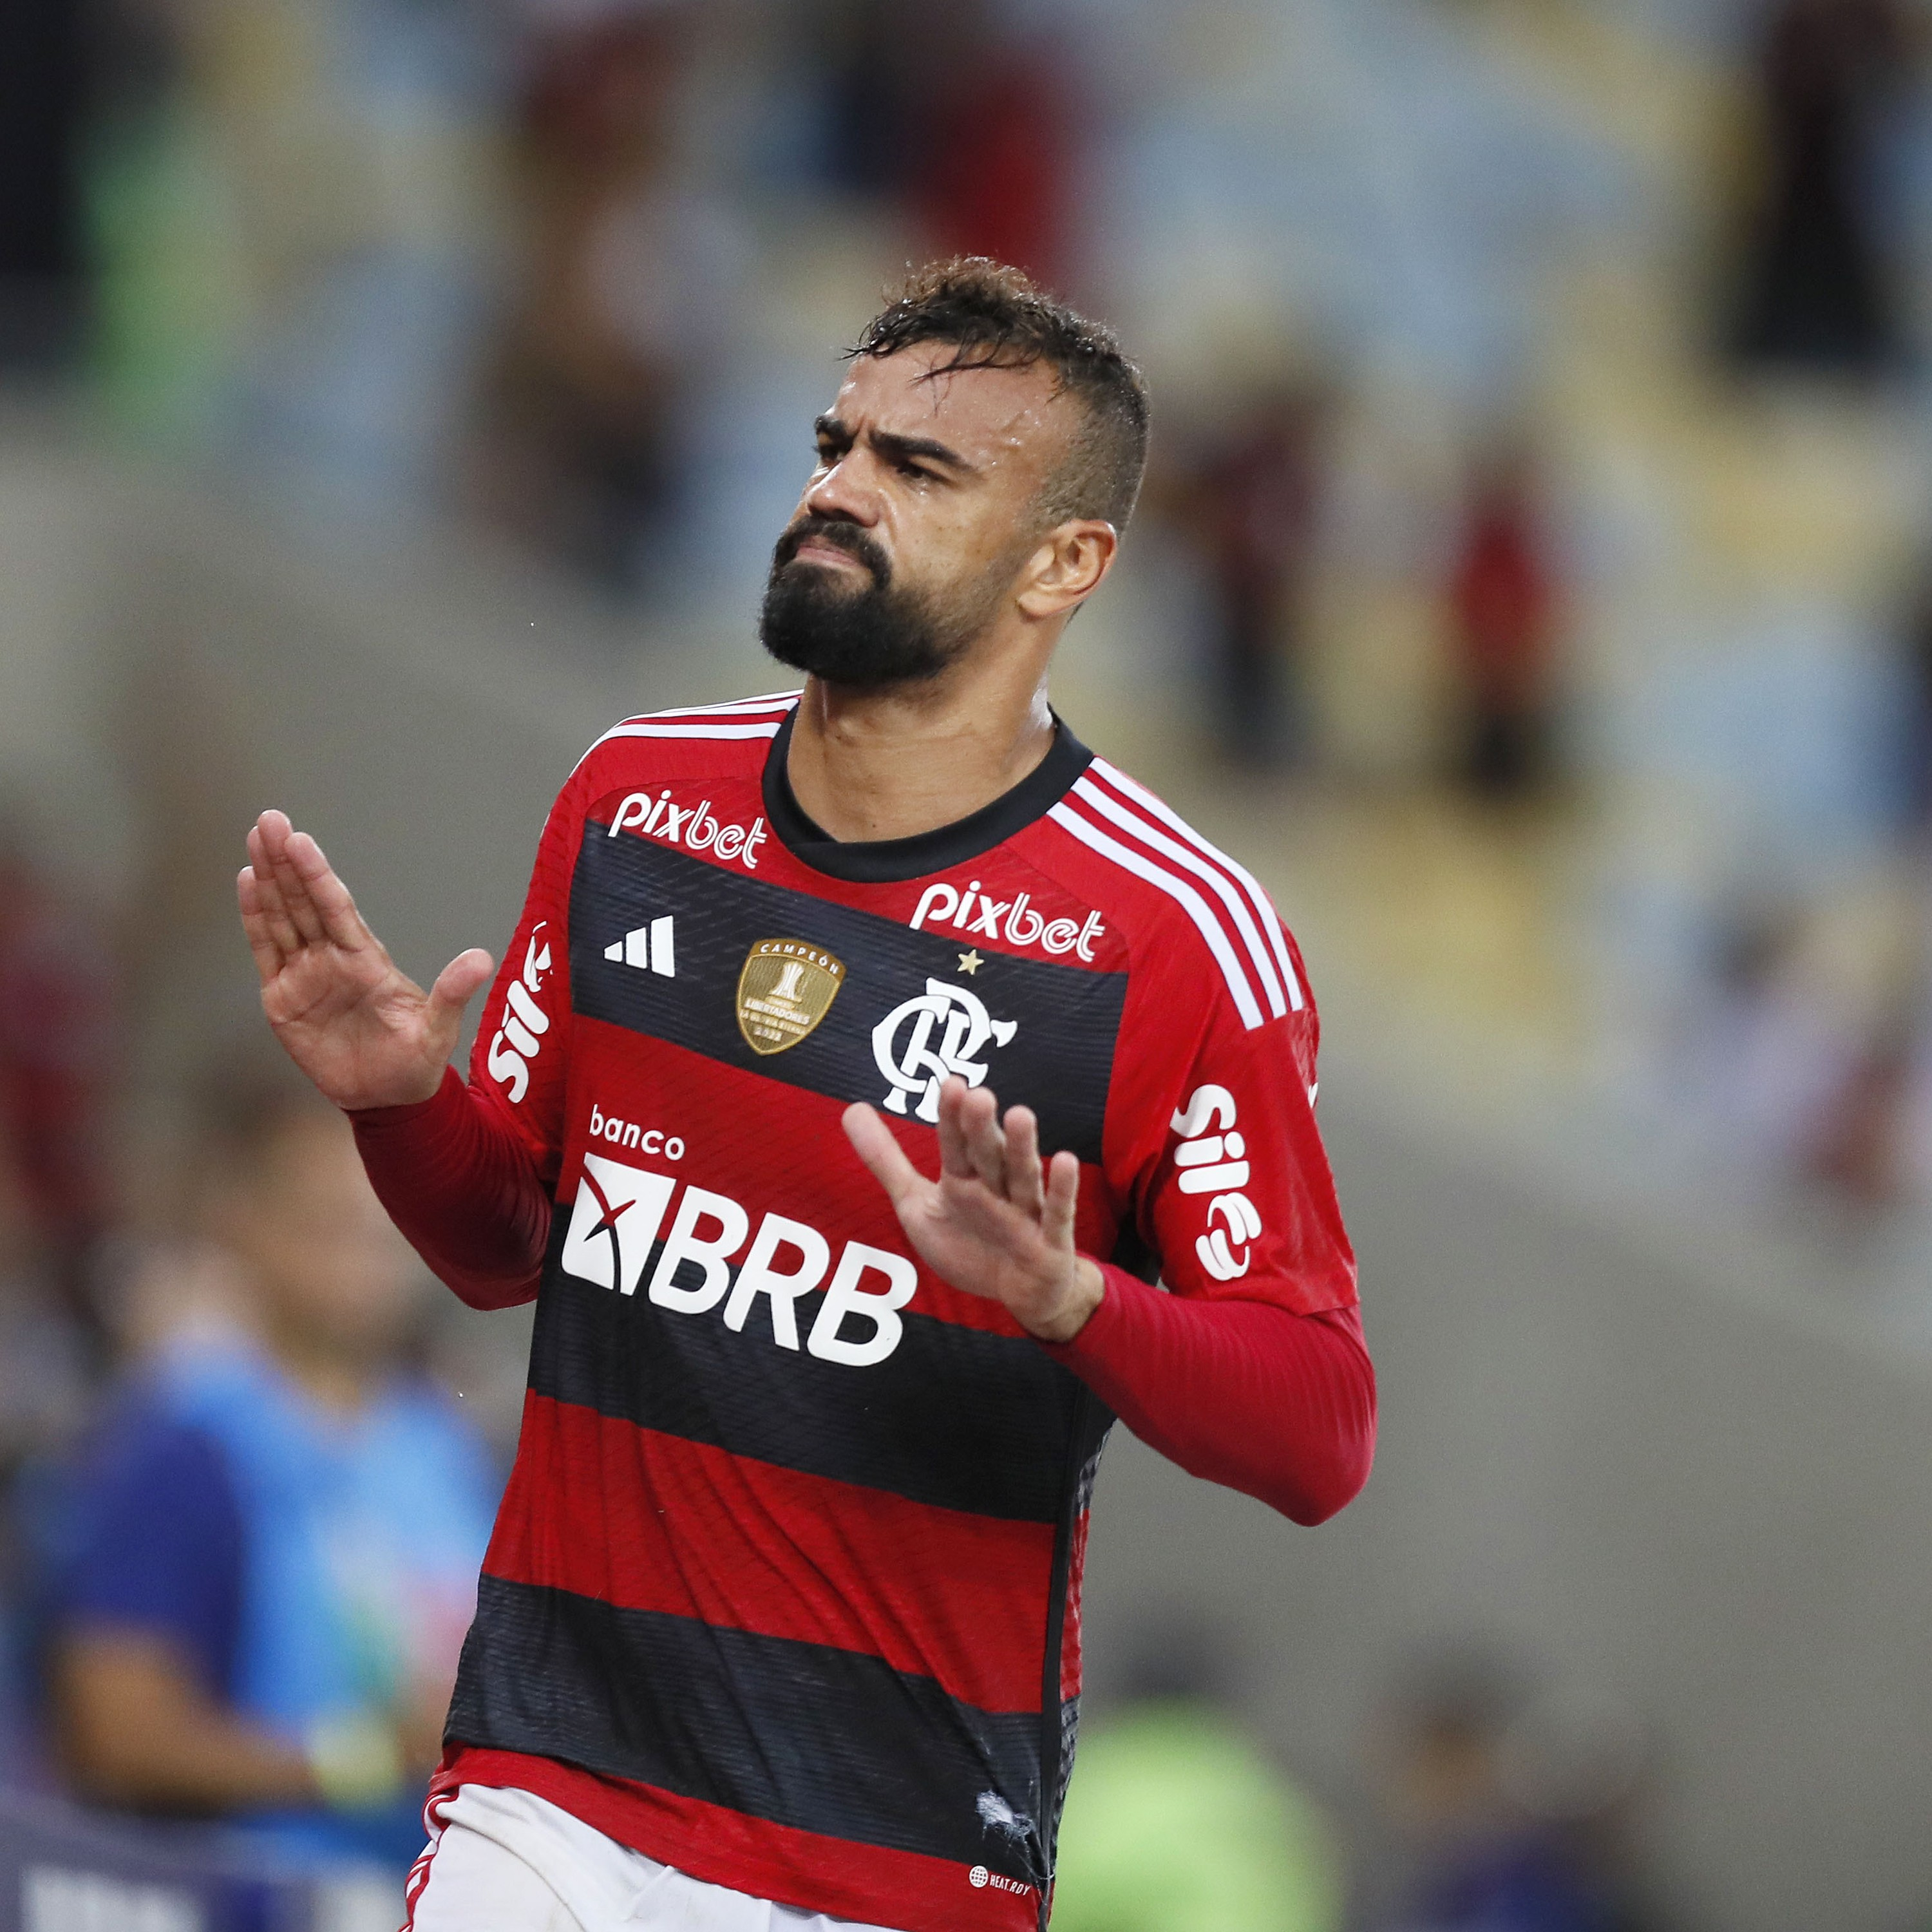 GE Flamengo #316 - Vitória traz tranquilidade, mas ainda gera dúvidas sobre desempenho